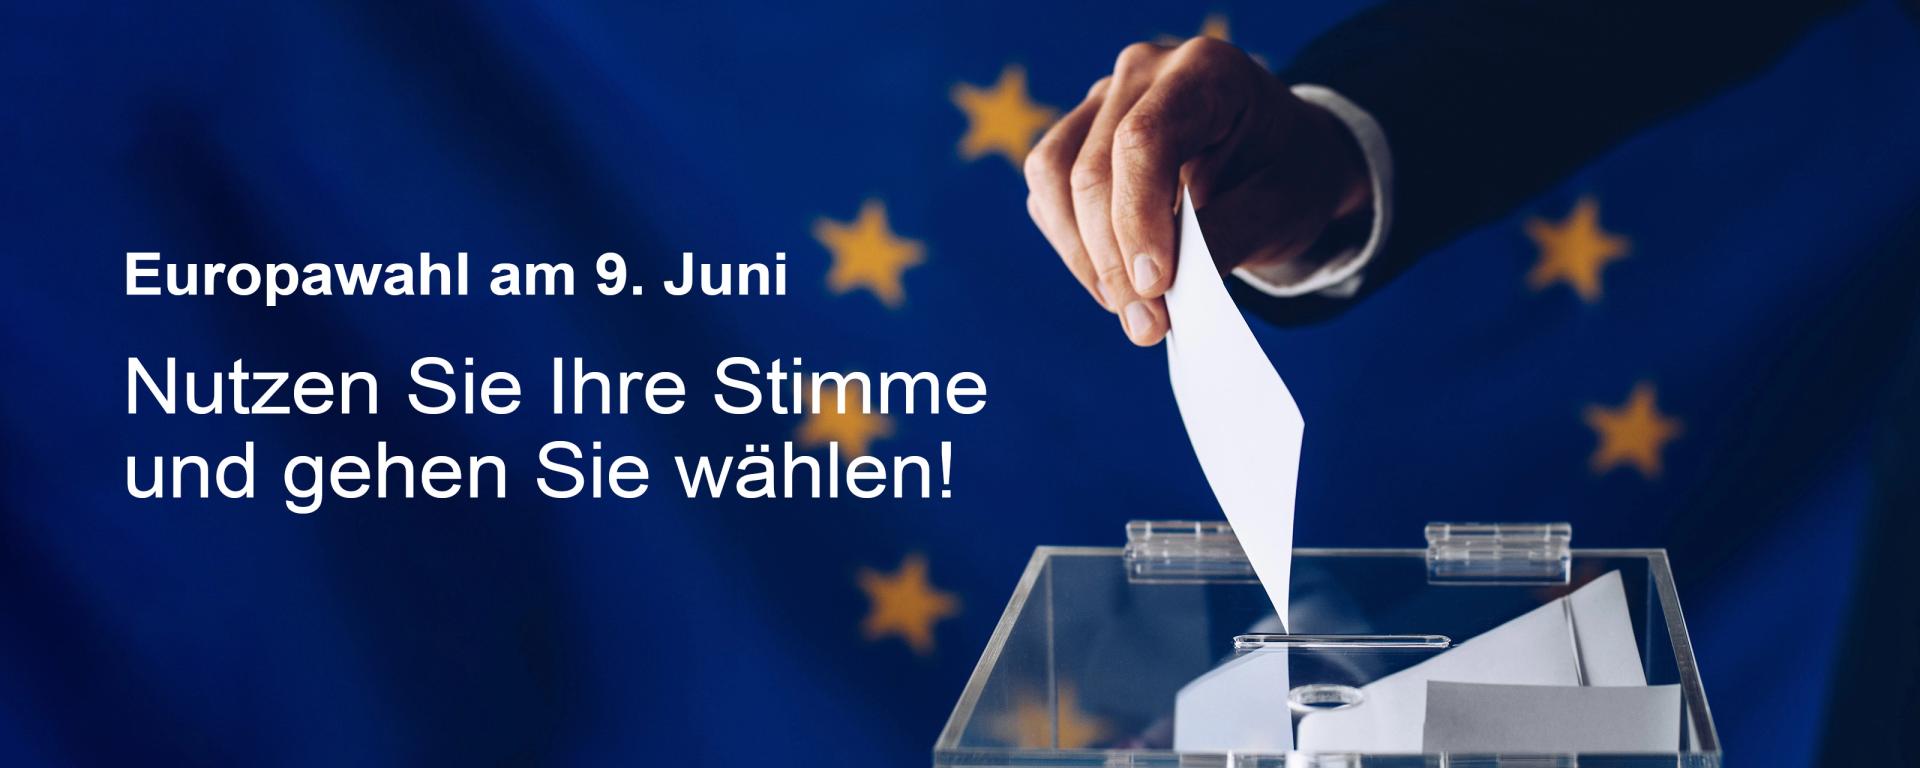 Europawahl am 9. Juni: Nutzen Sie Ihre Stimme und gehen Sie wählen!